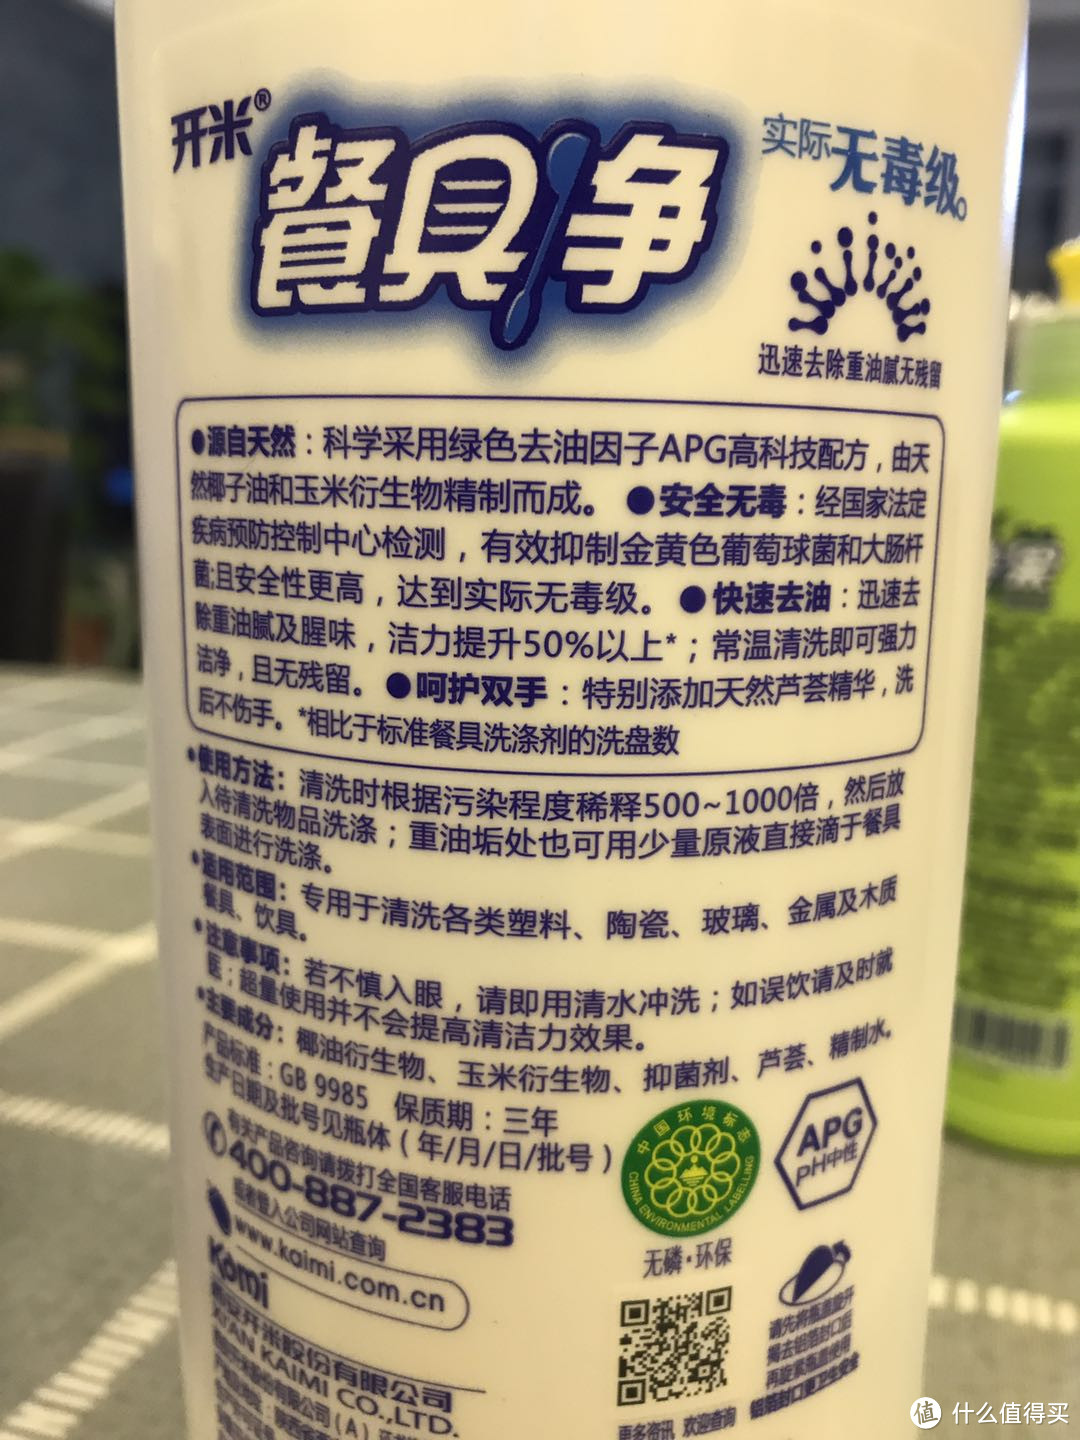 以专利技术为核心 打造新一代环保洗涤产品  开米 涤王、餐具净、蔬果净套装